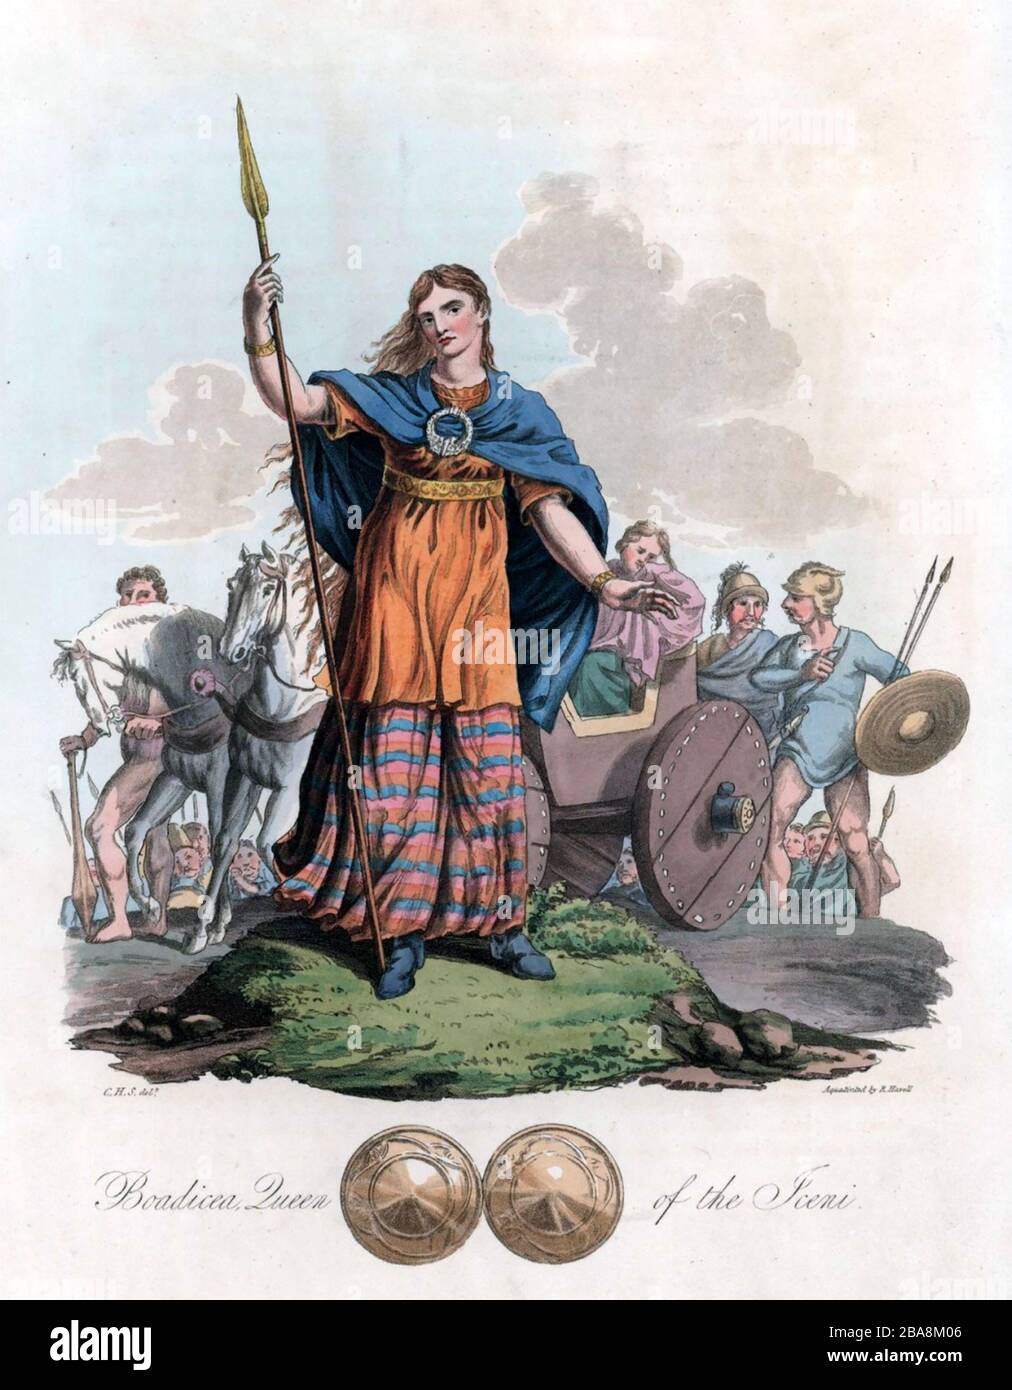 BOUDICA Königin des keltischen Iceni-Stammes, der einen Aufstand gegen die römische Besetzung eines Teils Englands um 60 n. Chr. anführte. Gravur aus "der Tracht der ursprünglichen Einwohner der britischen Inseln", die im Jahr 1815 veröffentlicht wurde. Stockfoto